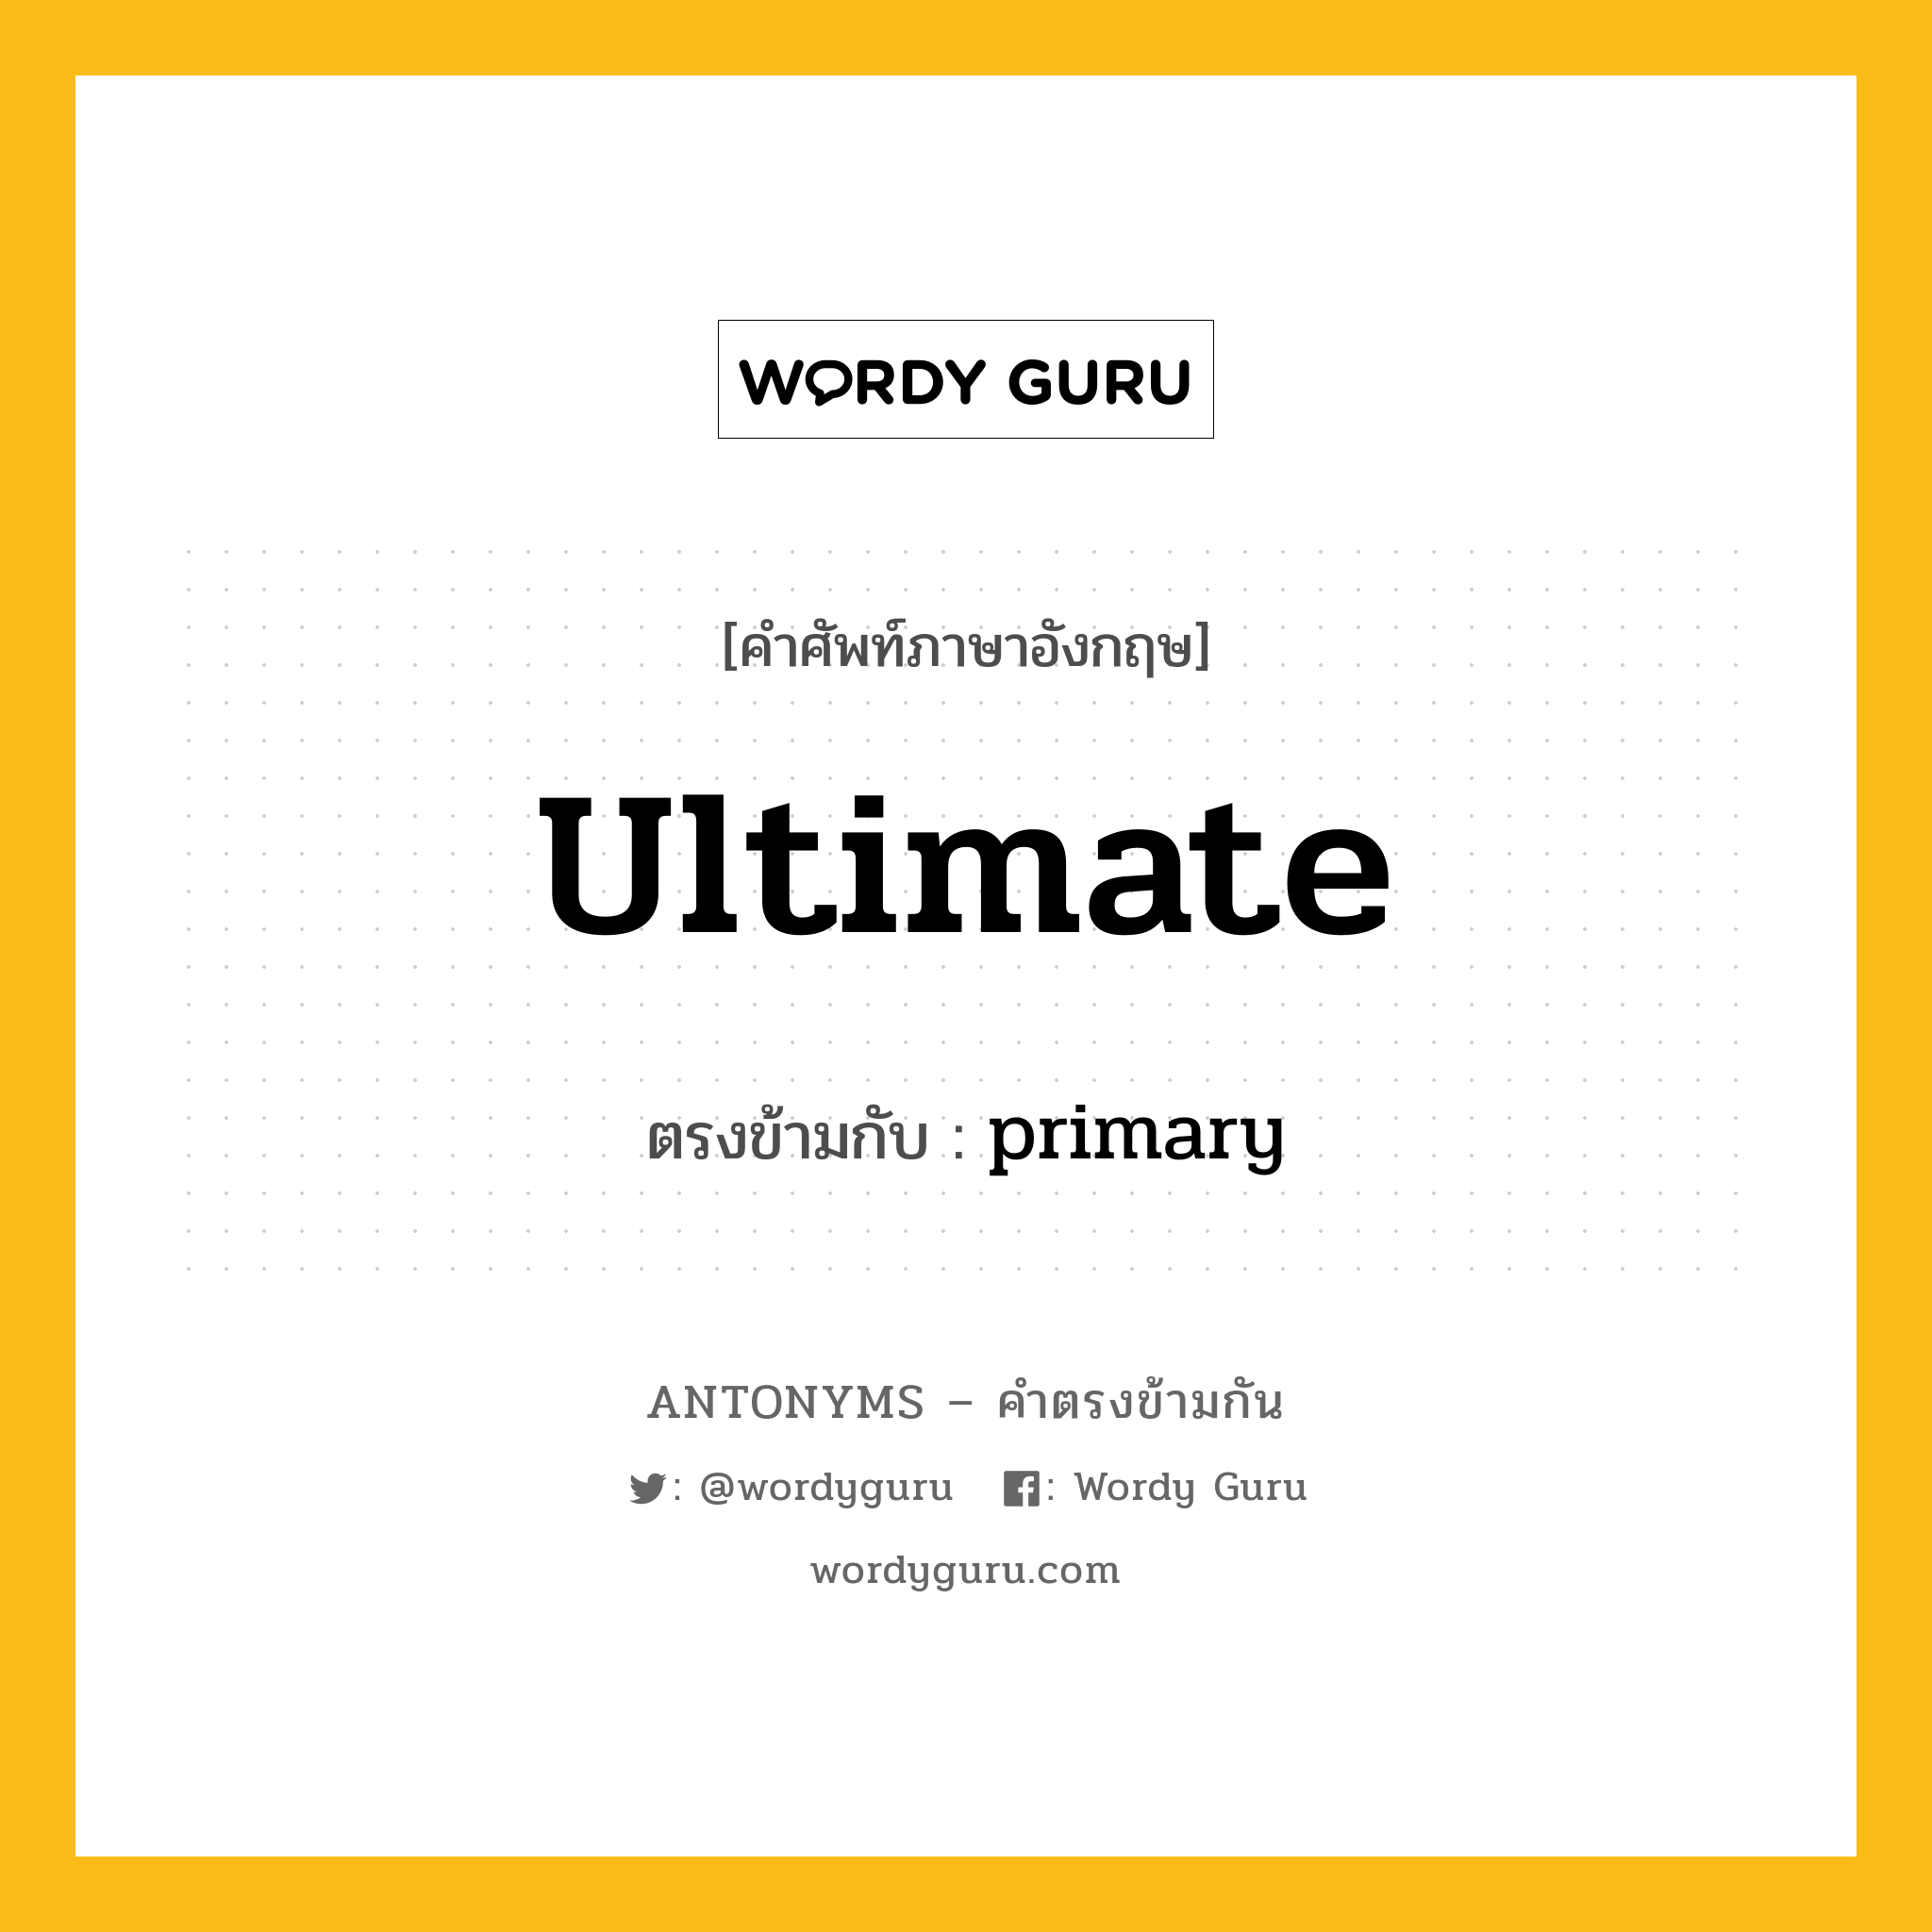 ultimate เป็นคำตรงข้ามกับคำไหนบ้าง?, คำศัพท์ภาษาอังกฤษ ultimate ตรงข้ามกับ primary หมวด primary